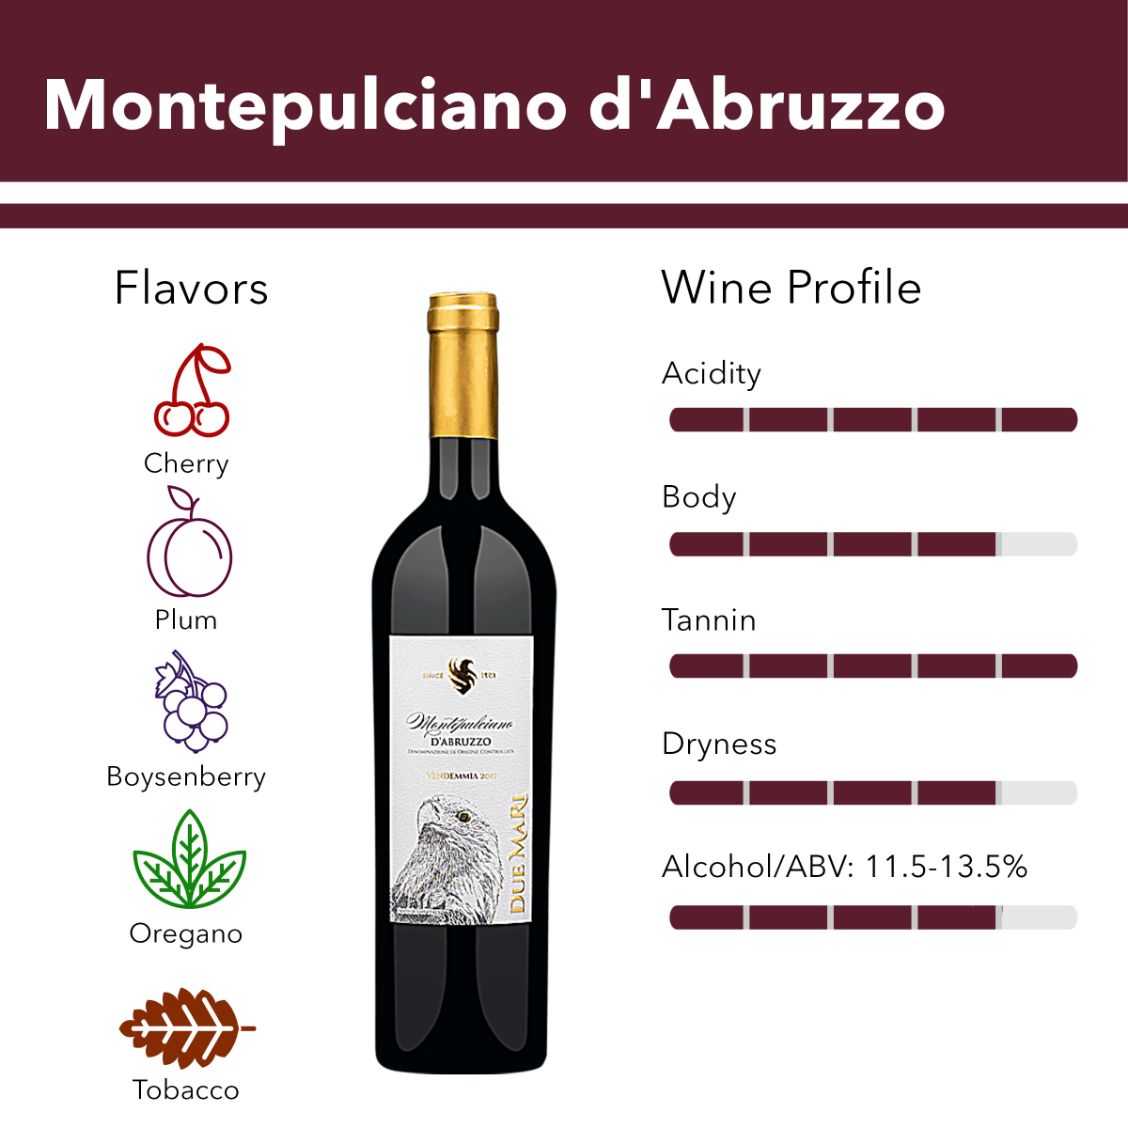 Montepulciano d'Abruzzo wine flavor profile.